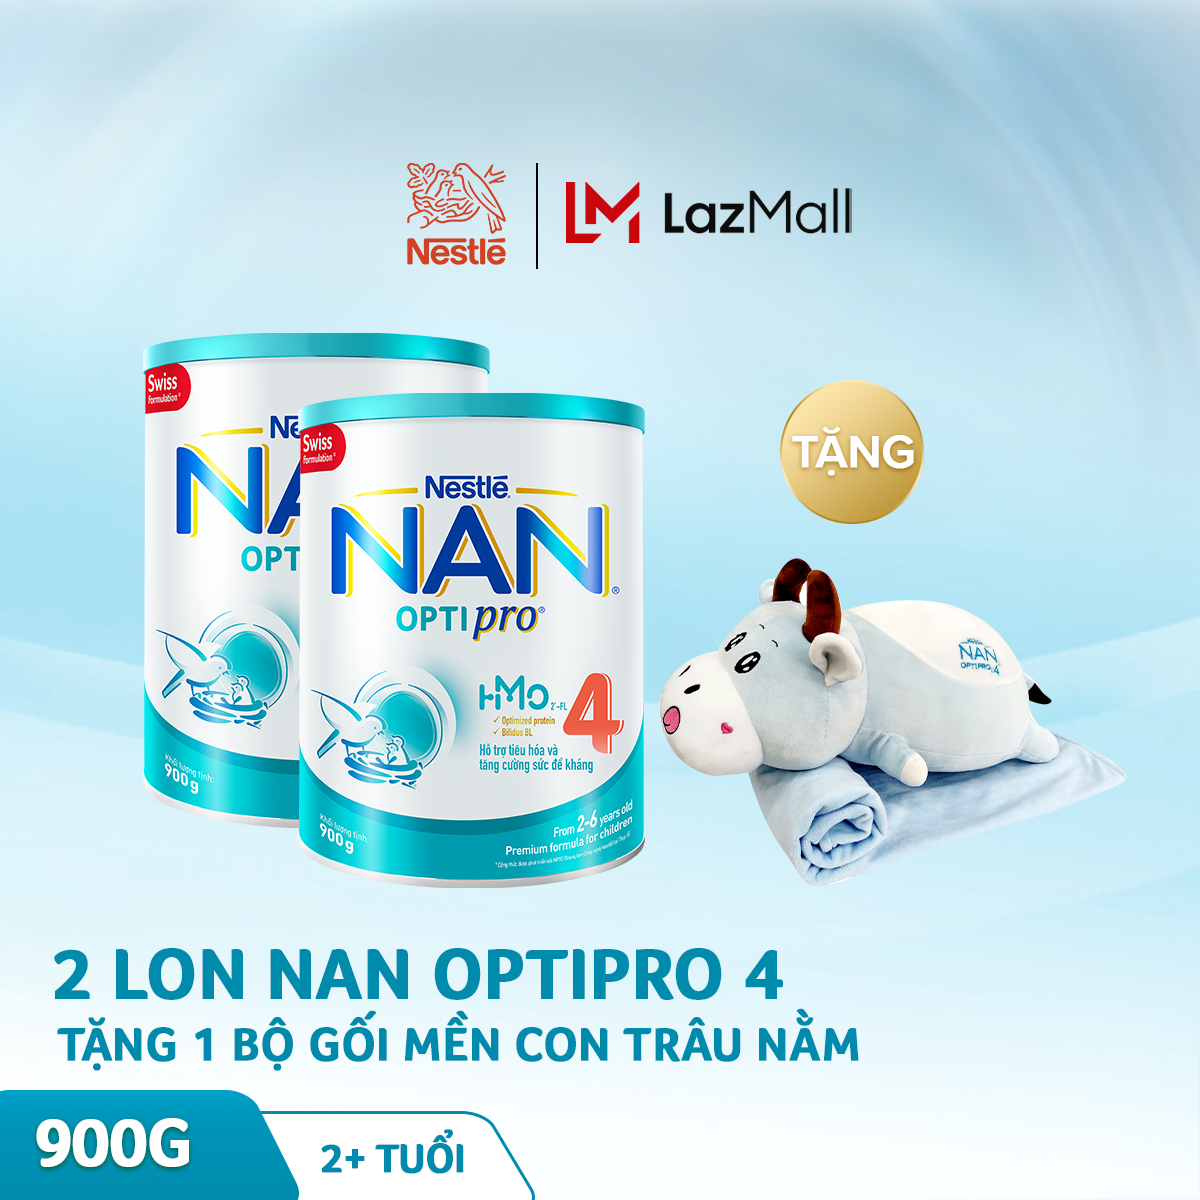 [FREESHIP TOÀN QUỐC]Bộ 2 lon sữa bột Nestle NAN Optipro 4 HM-O cho trẻ trên 2 tuổi 900g + Tặng 1 bộ gối mền con trâu nằm trị giá 250K (quà độc quyền) (mẫu mới)